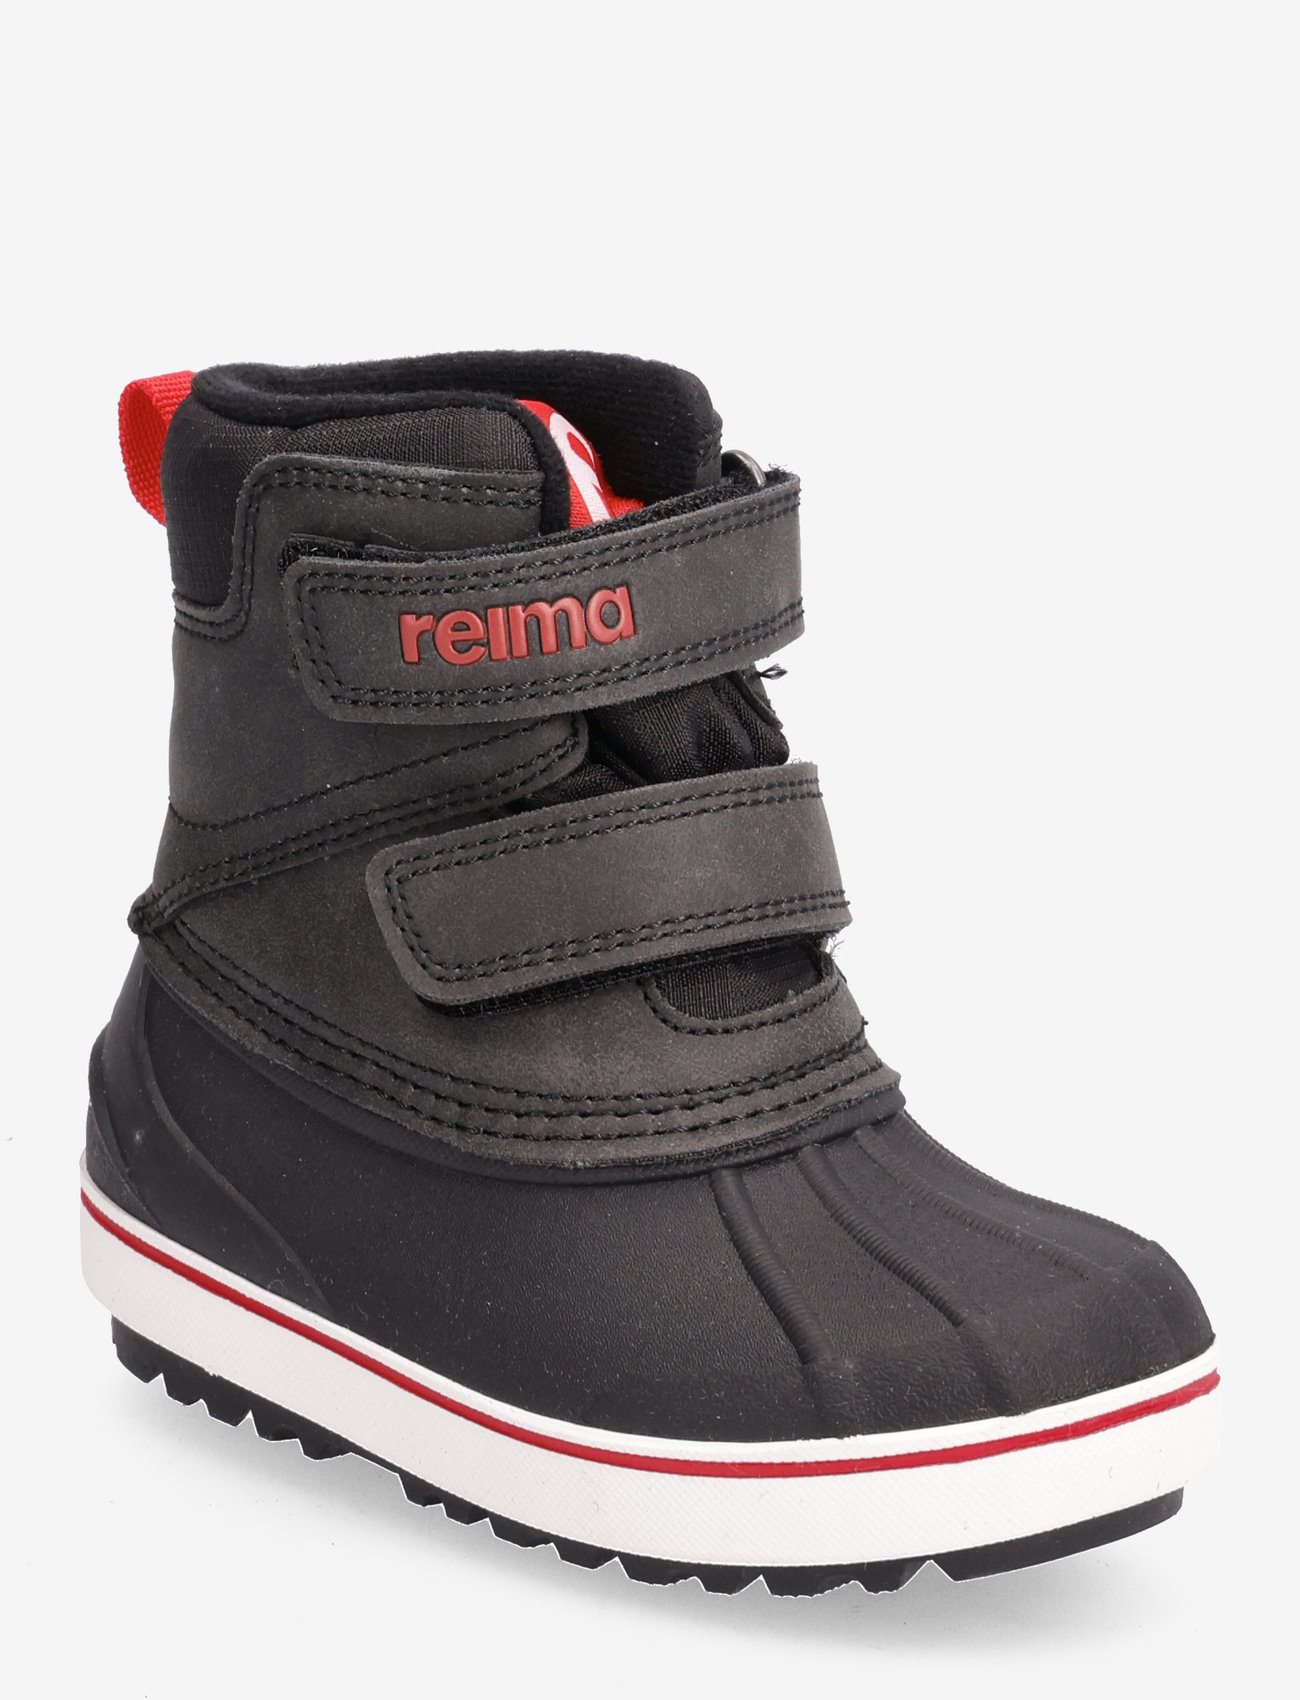 Reima - Winter boots, Coconi - dzieci - black - 0